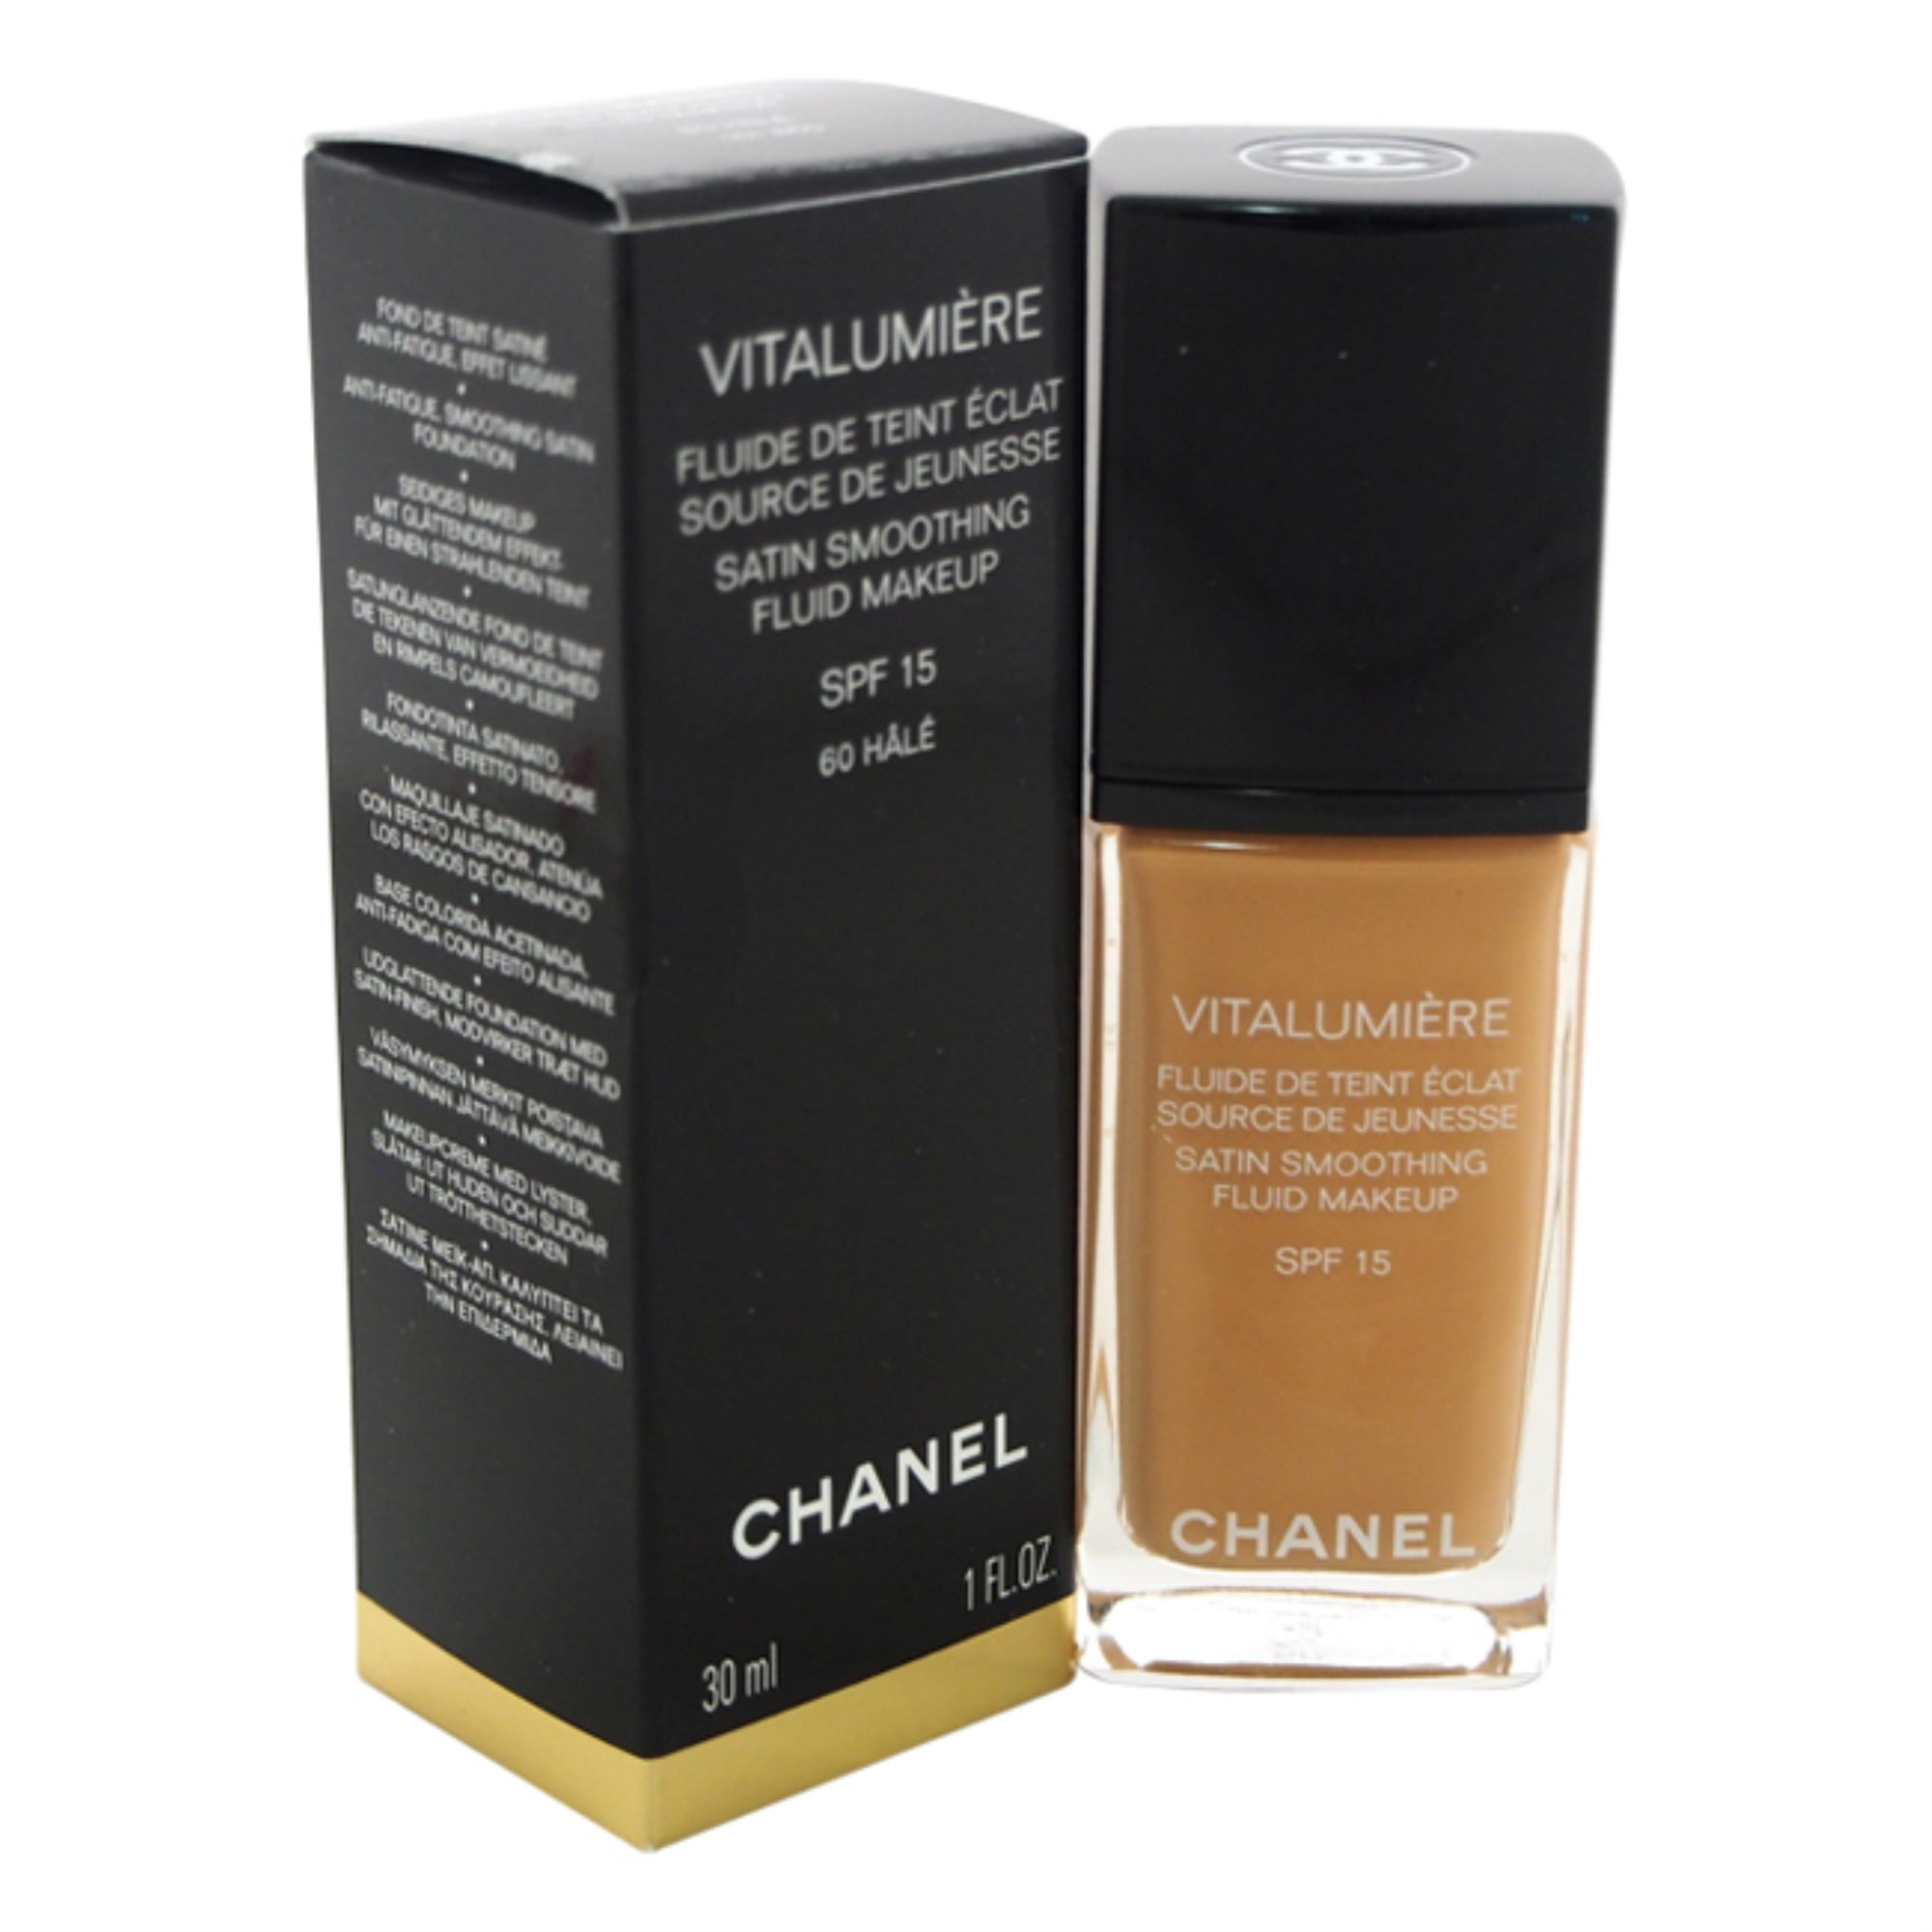 Vitalumiere Fluide Makeup SPF 15 - # 60 Hale by Chanel for Women - 1 oz  Makeup